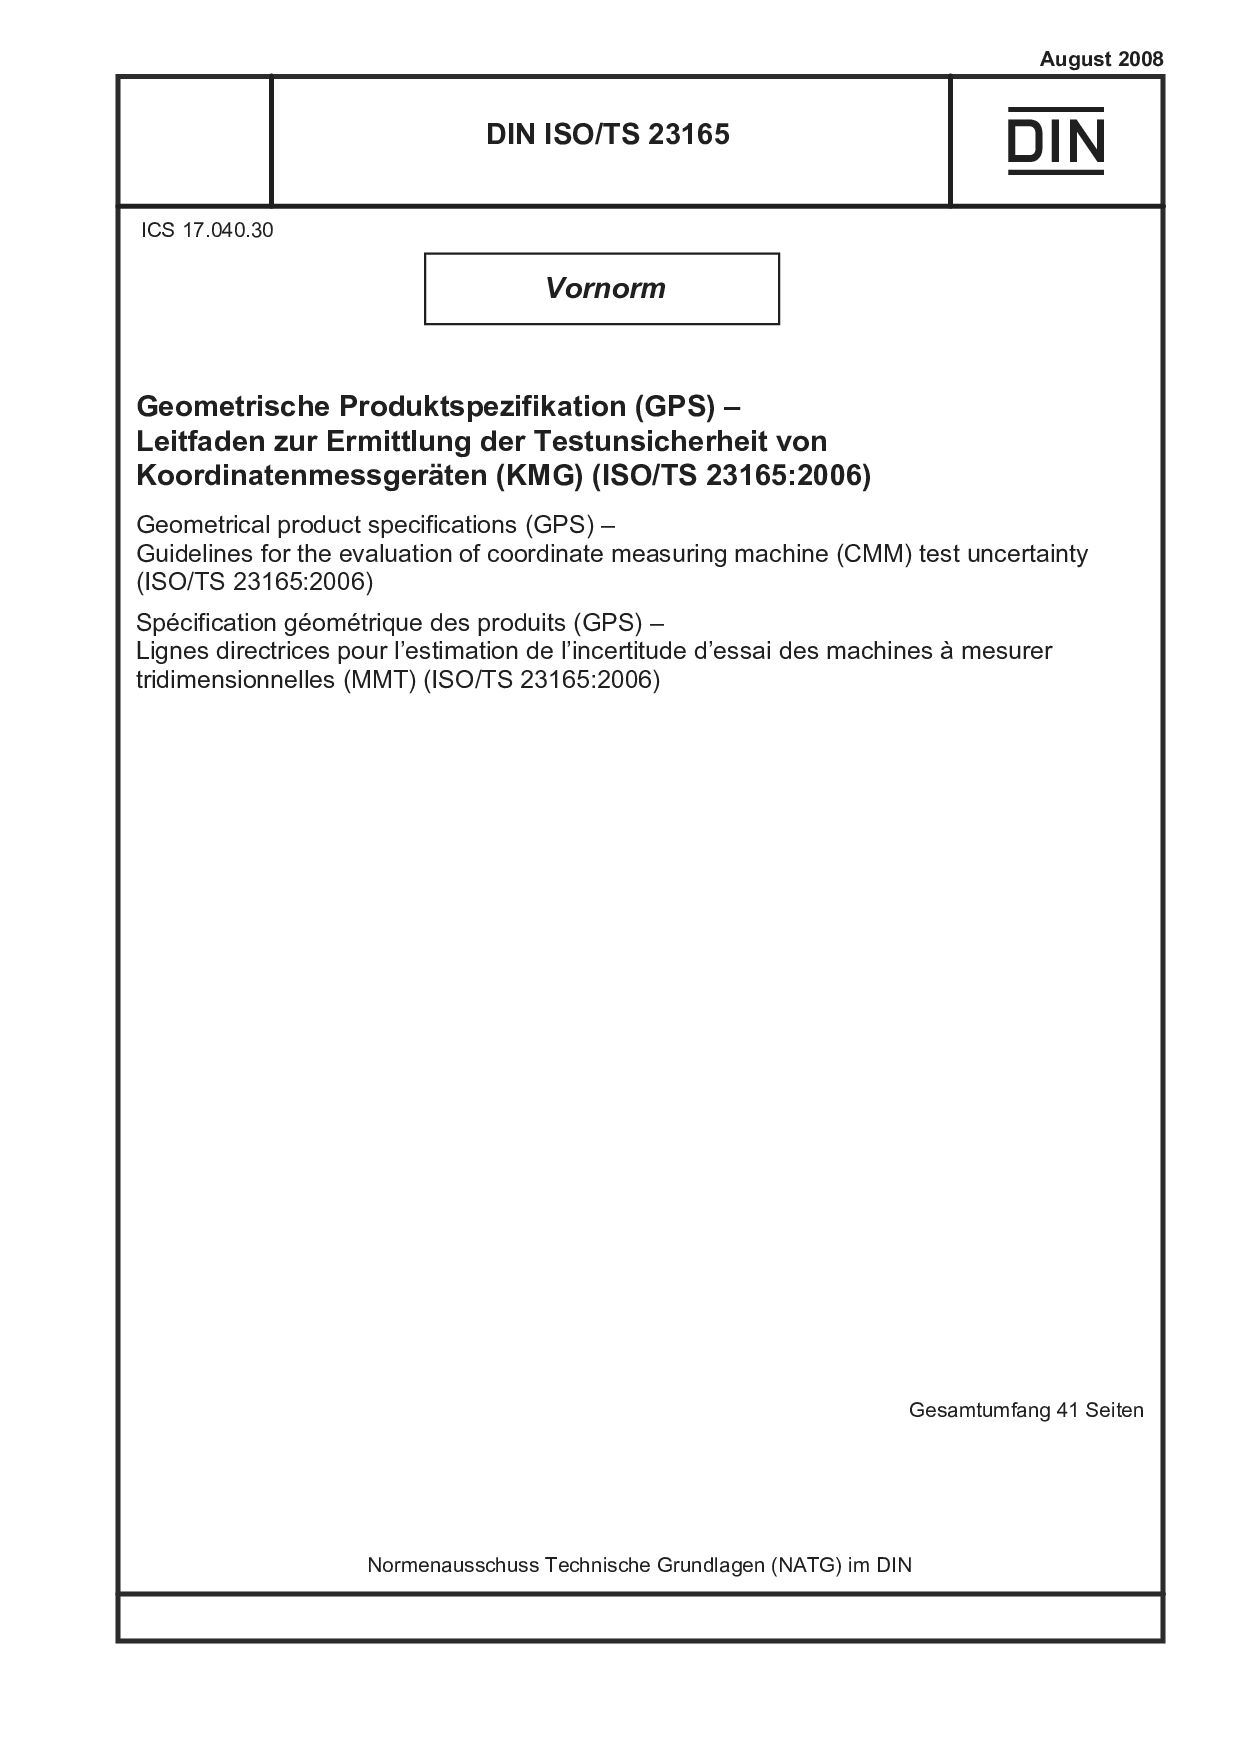 DIN ISO/TS 23165:2008-08封面图